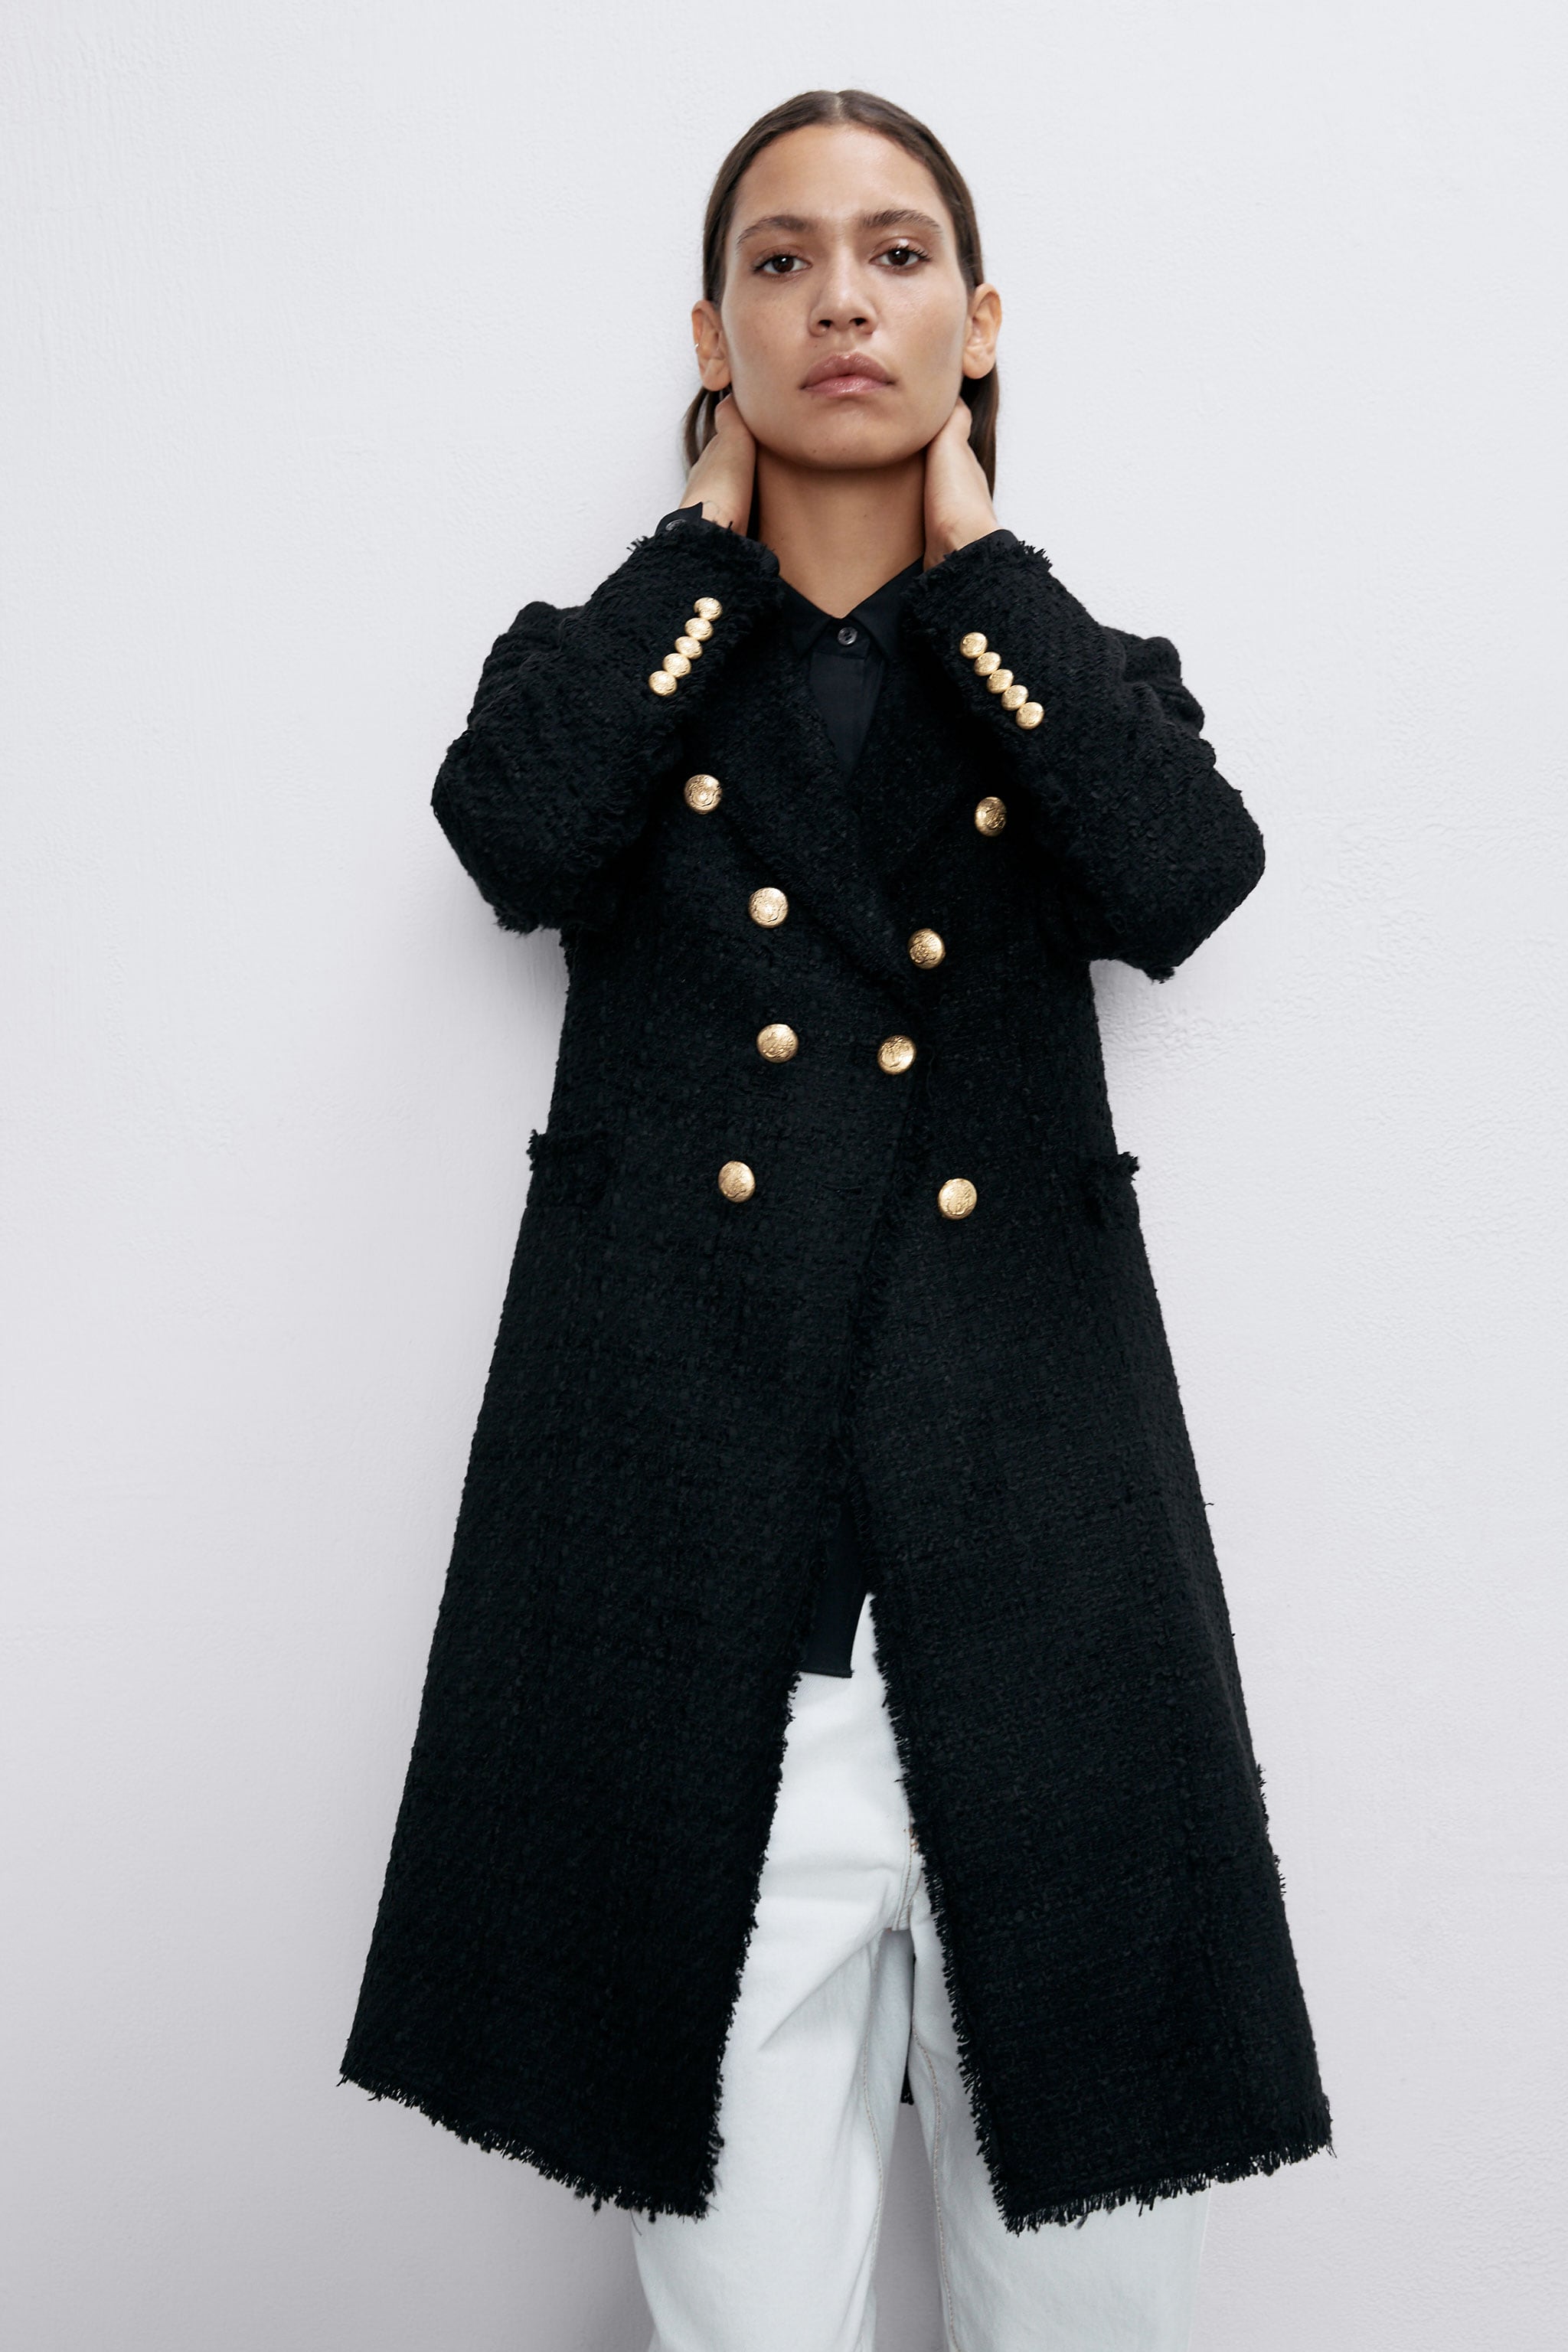 Fotos: Estos abrigos de menos de 50 euros de los Special Prices de Zara te harán las rebajas | Mujer Hoy